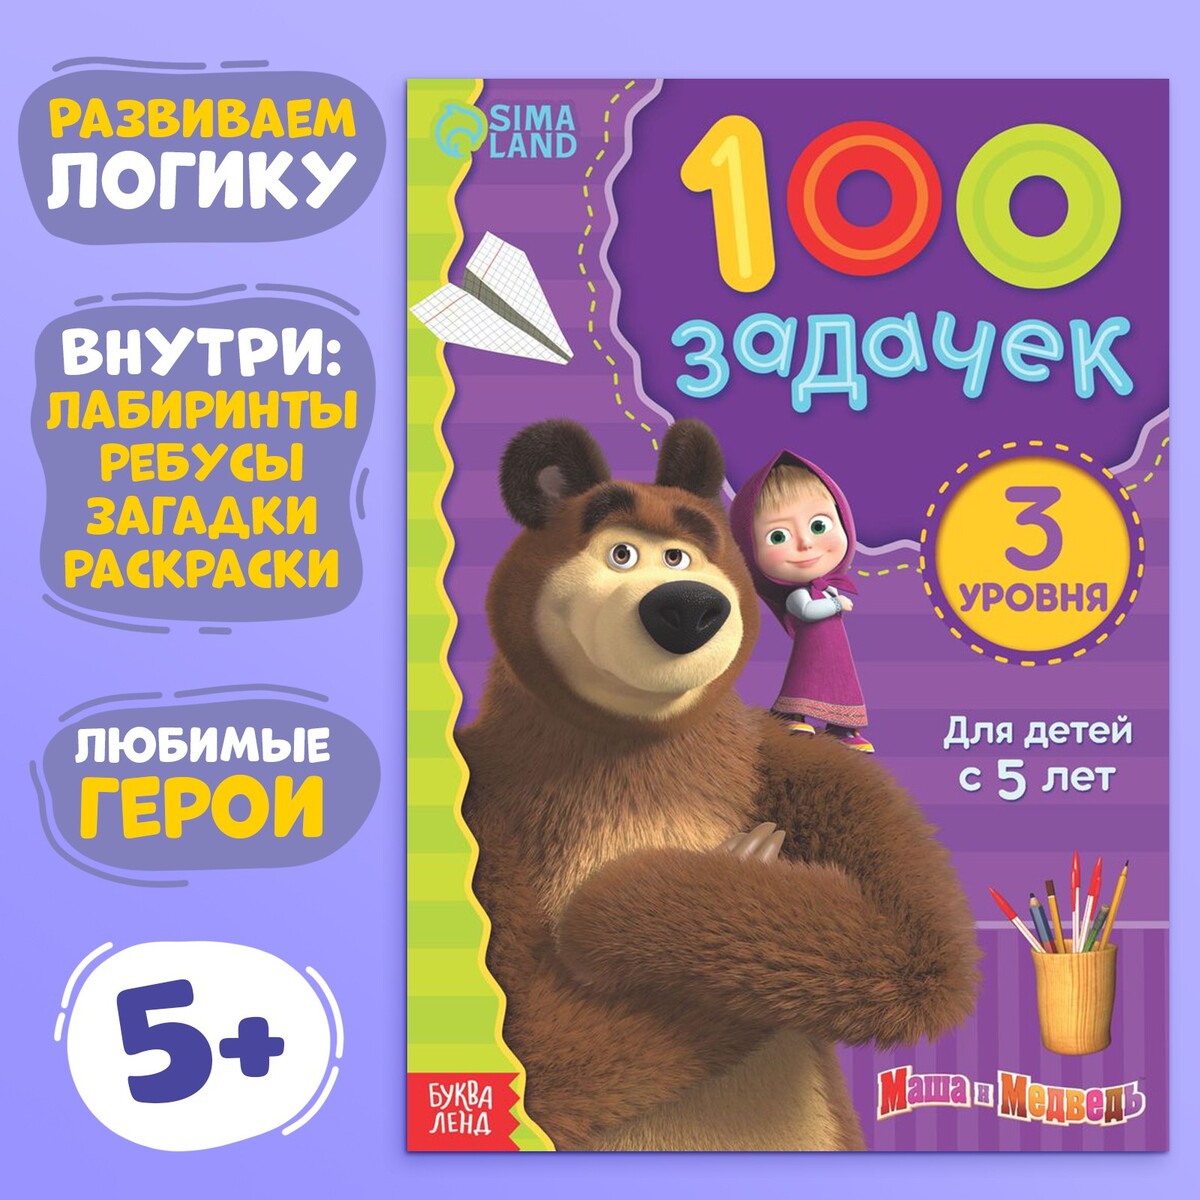 Детские книжки Маша и медведь. Маша и медведь журнал. Медведь с книгой. Маша и медведь пять сказок книга. Sm masha